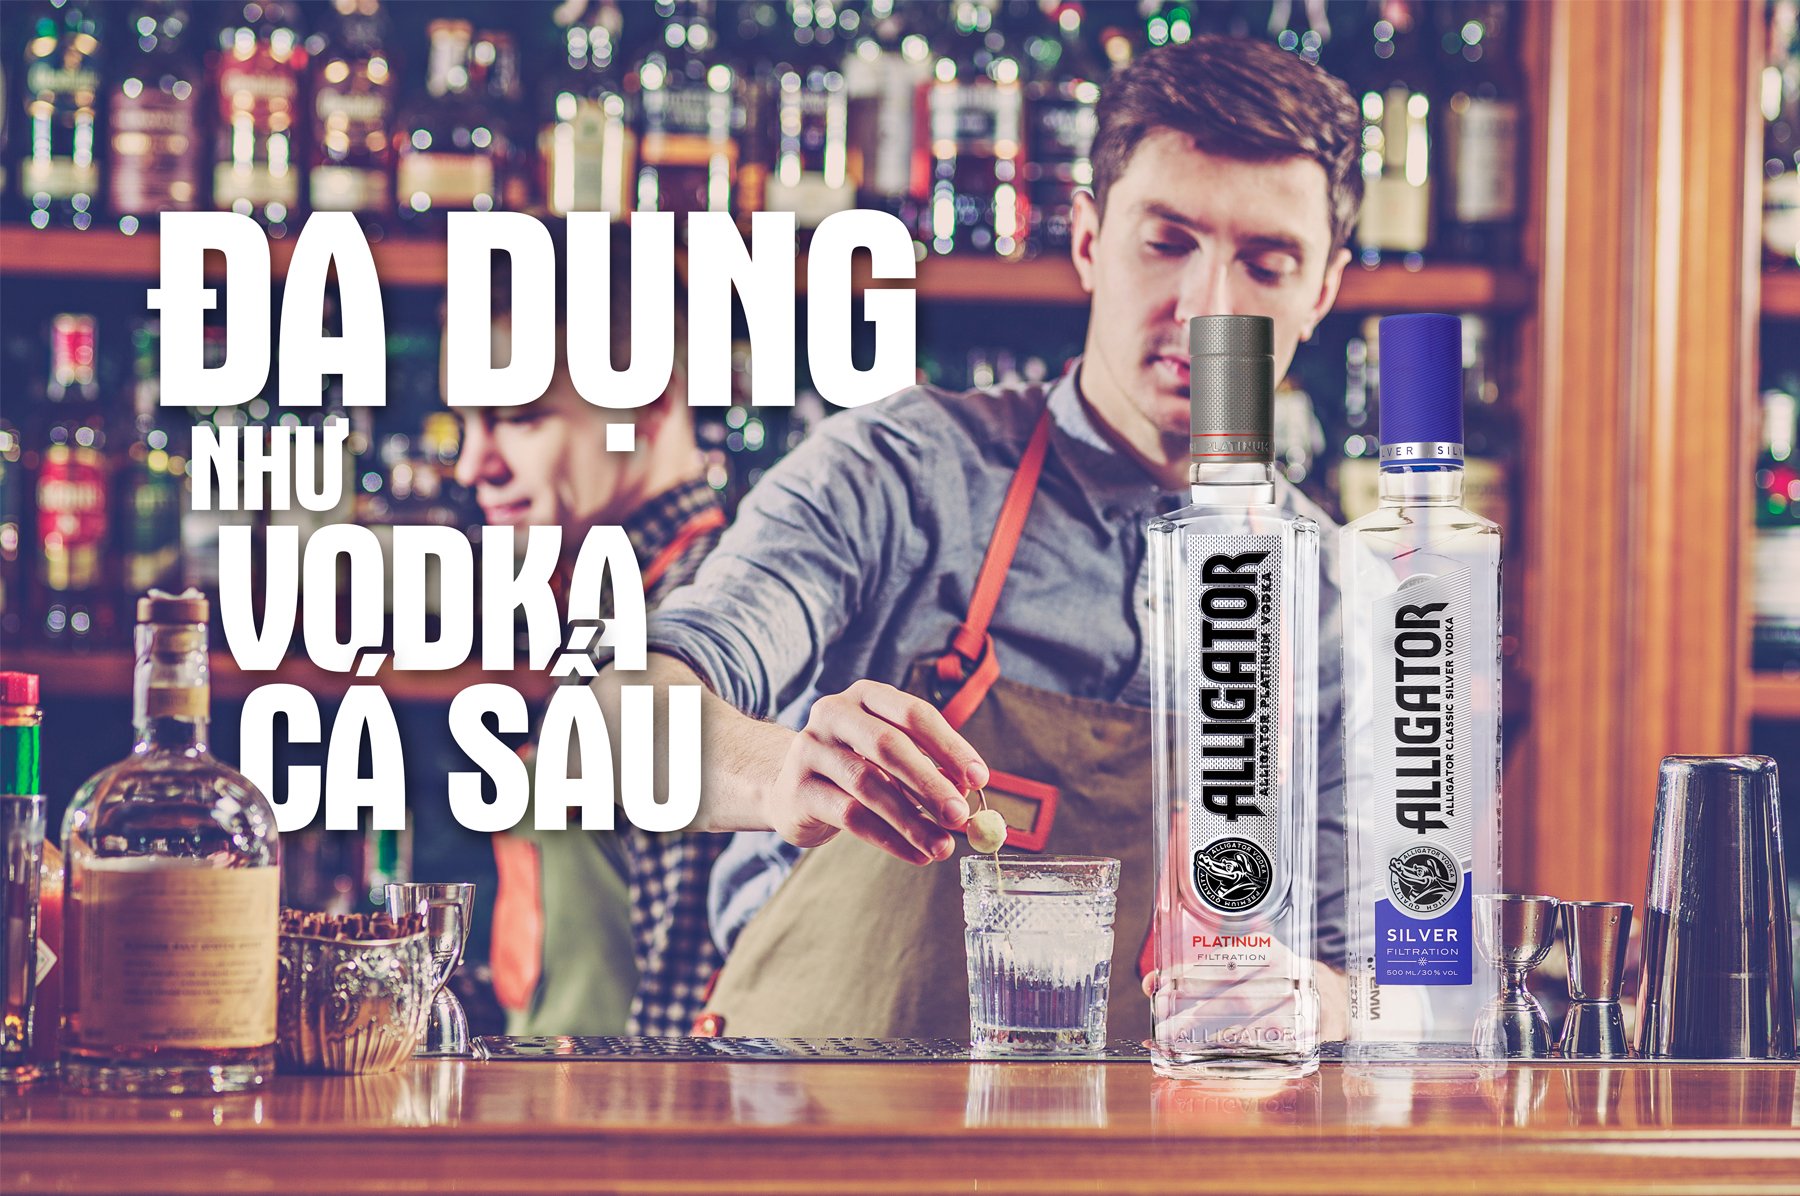 thuong-thuc-vodka-ca-sau-dung-chuan-vi